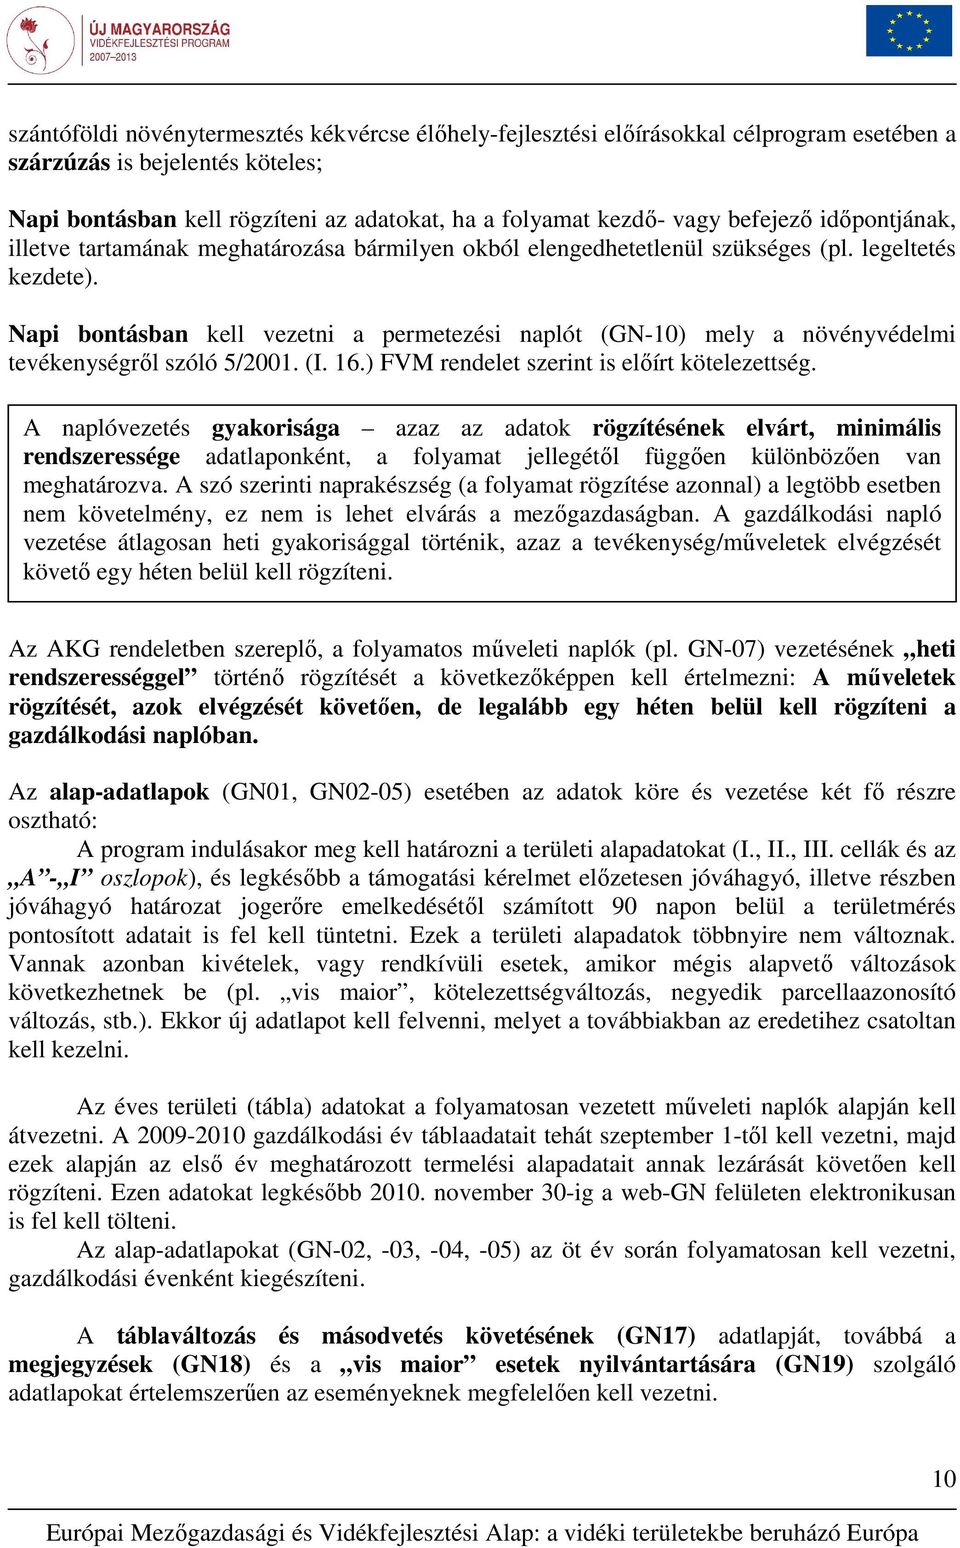 Napi bontásban kell vezetni a permetezési naplót (GN-10) mely a növényvédelmi tevékenységrıl szóló 5/2001. (I. 16.) FVM rendelet szerint is elıírt kötelezettség.